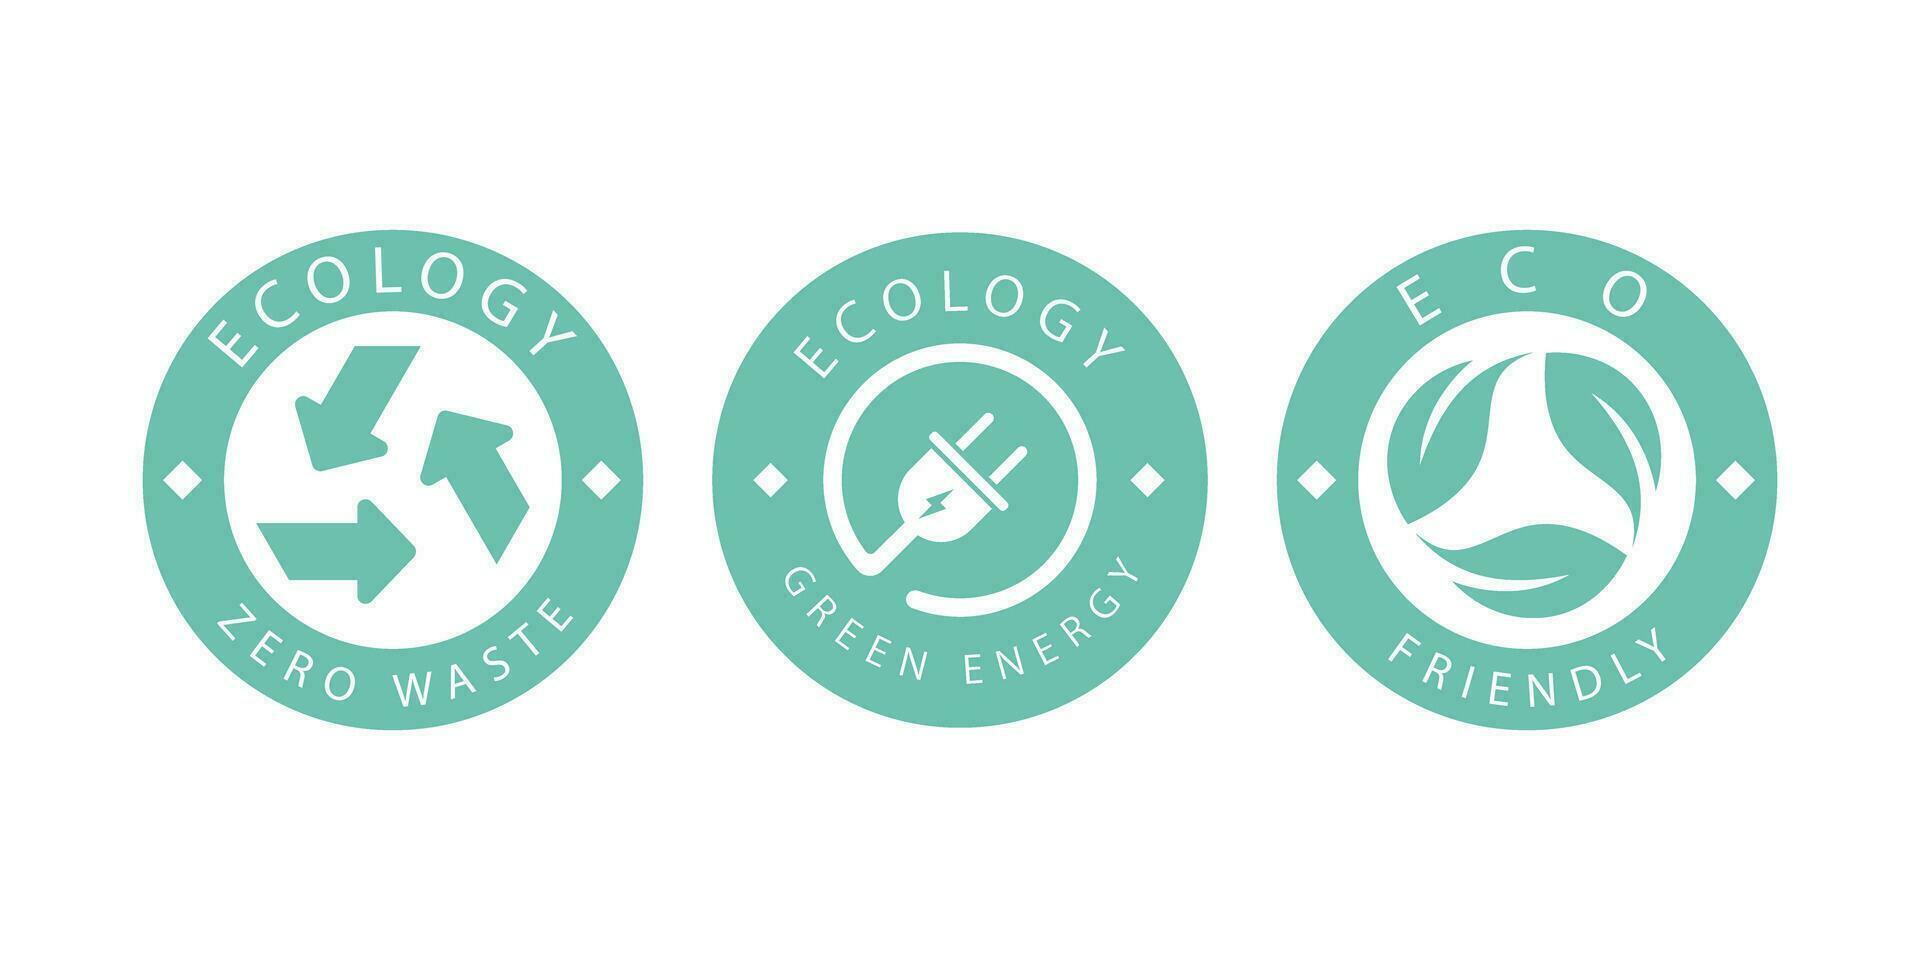 un conjunto de logos en el tema de reciclaje, ecología y cero contaminación. aislado en blanco antecedentes. vector ilustración.